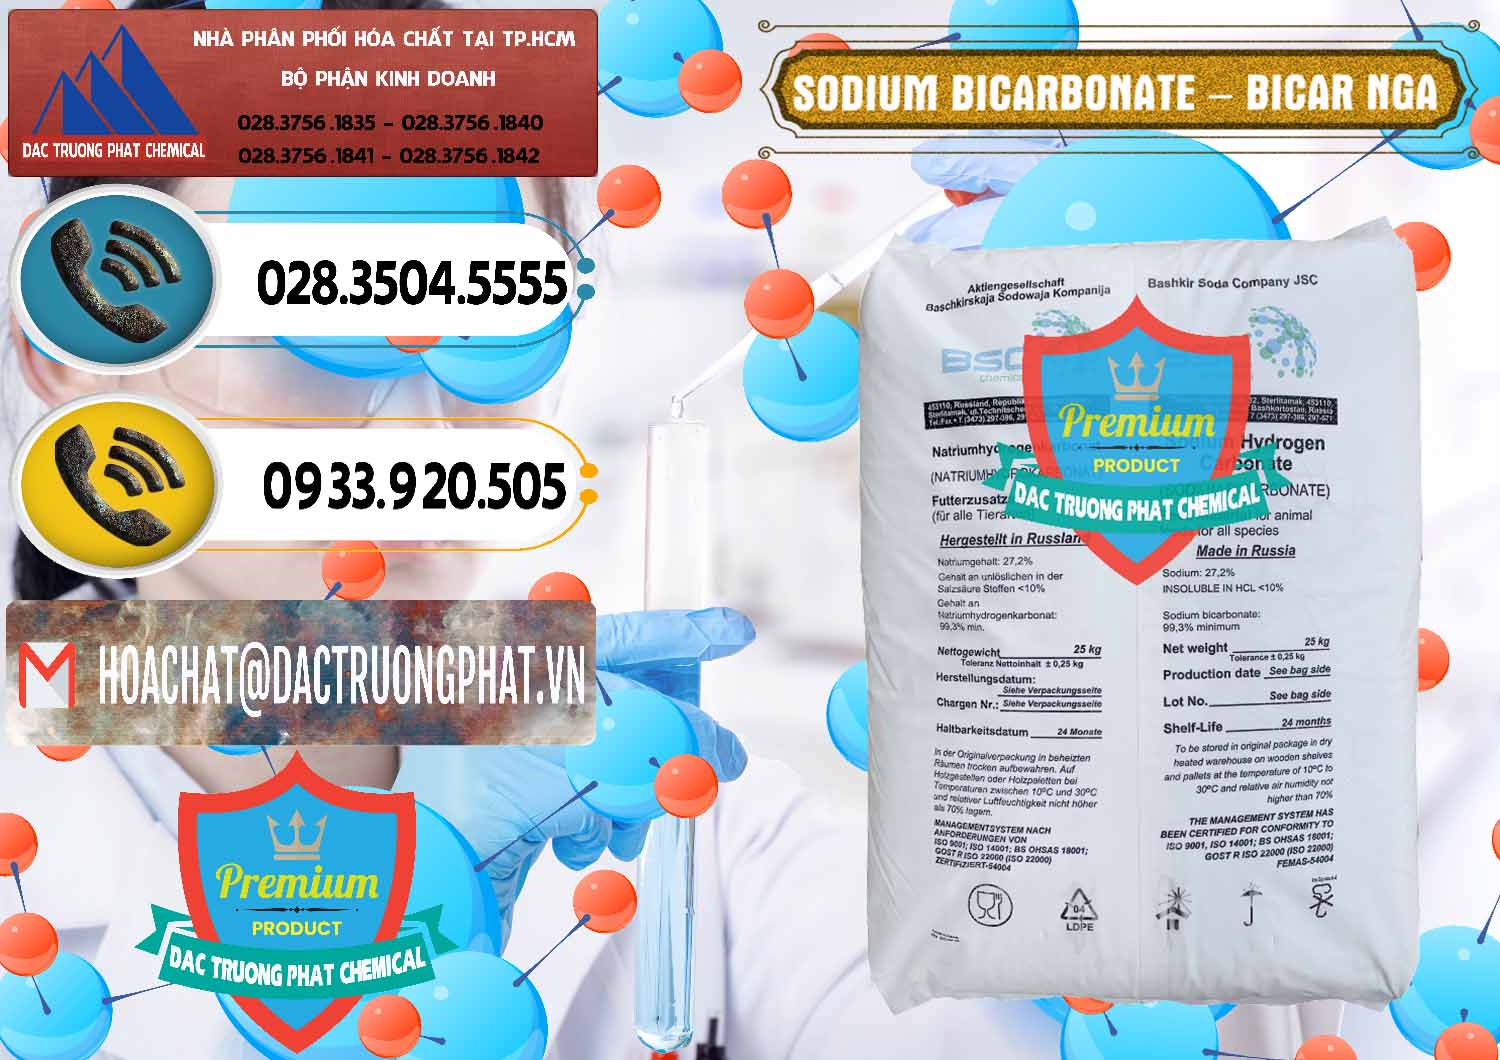 Bán - phân phối Sodium Bicarbonate – Bicar NaHCO3 Nga Russia - 0425 - Cty phân phối & bán hóa chất tại TP.HCM - hoachatdetnhuom.vn